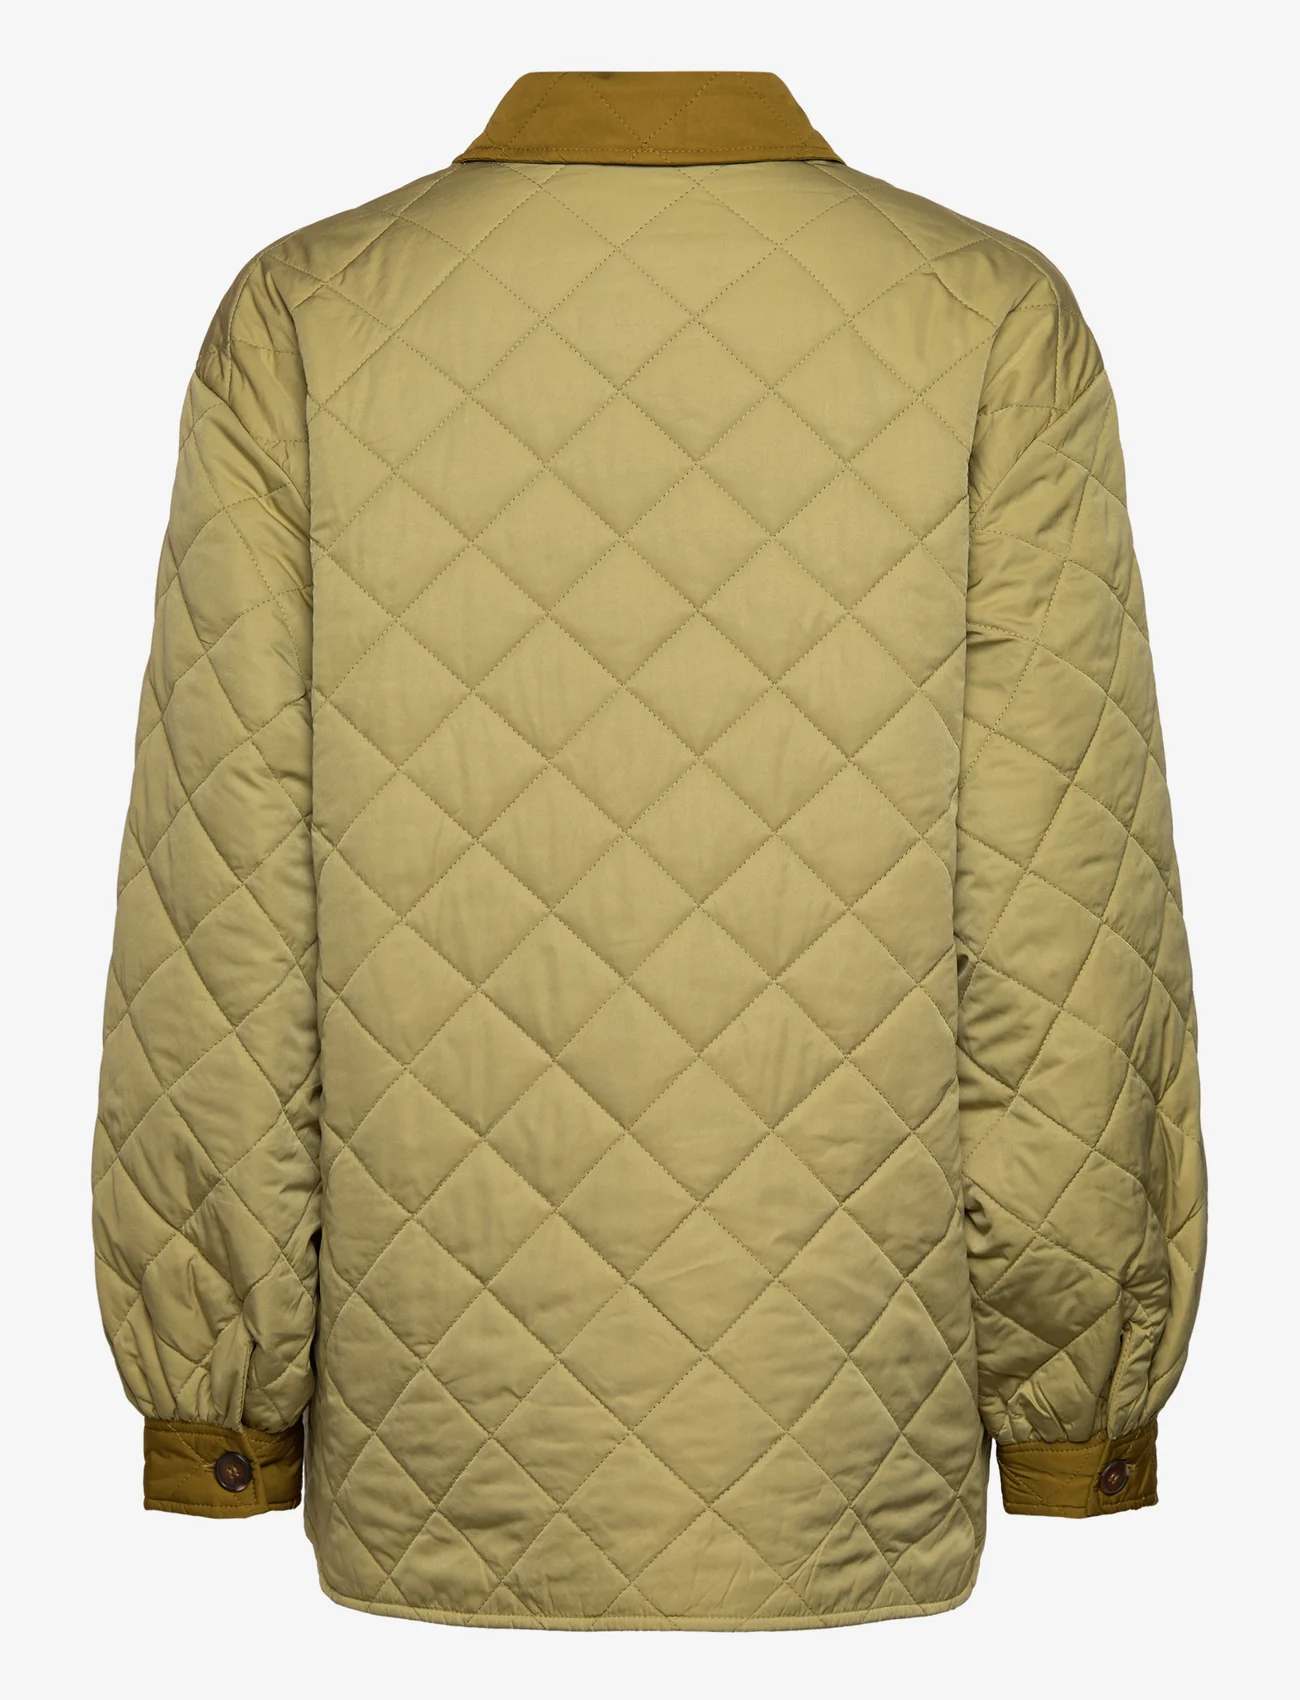 MSCH Copenhagen - MSCHIllian Quilt Jacket - frühlingsjacken - cedar - 1